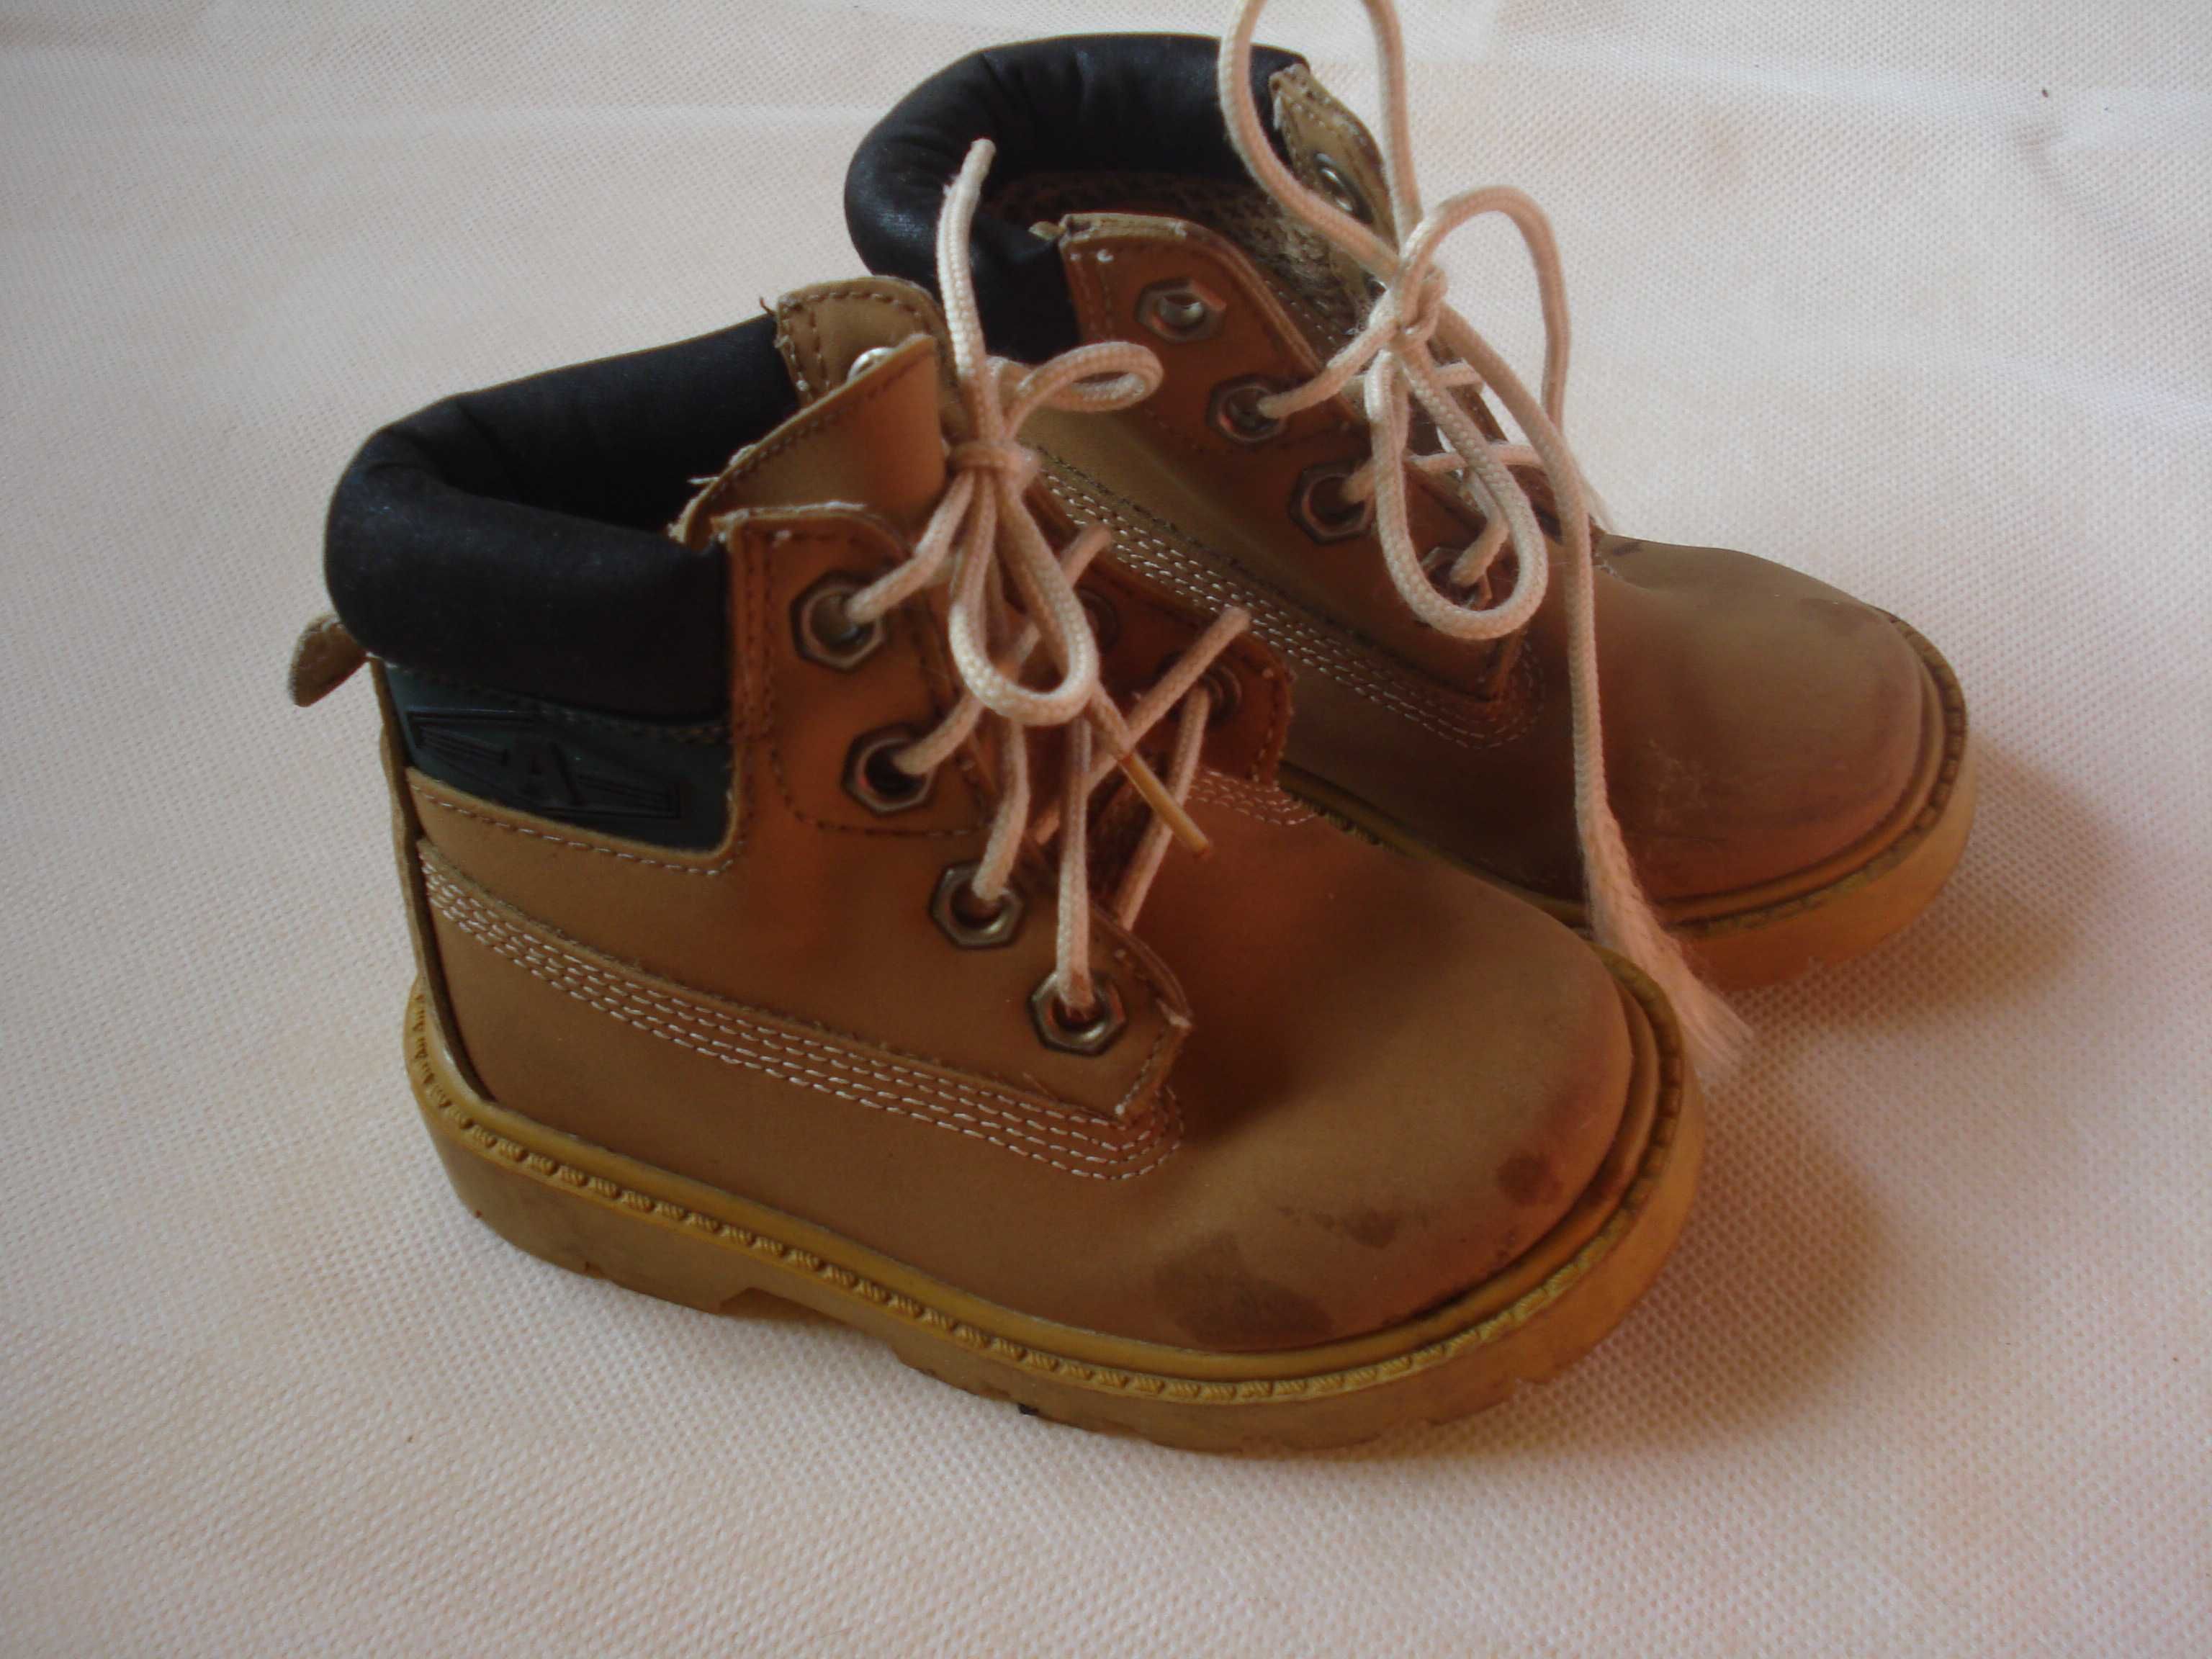 Весенние ботинки на малыша 22-23 размер, 13 см по стельке